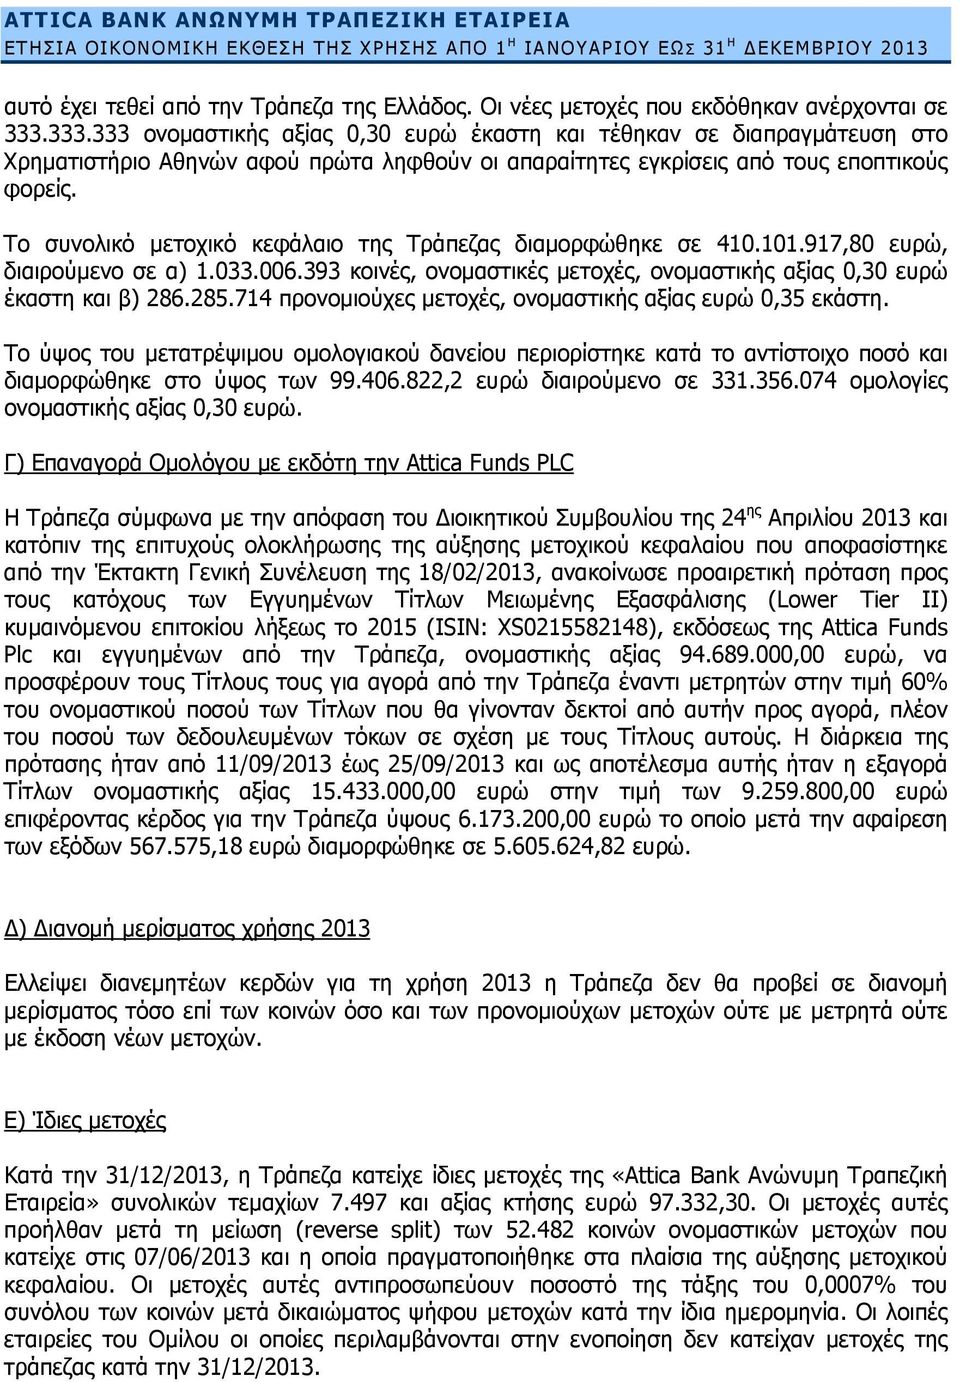 Το συνολικό μετοχικό κεφάλαιο της Τράπεζας διαμορφώθηκε σε 410.101.917,80 ευρώ, διαιρούμενο σε α) 1.033.006.393 κοινές, ονομαστικές μετοχές, ονομαστικής αξίας 0,30 ευρώ έκαστη και β) 286.285.